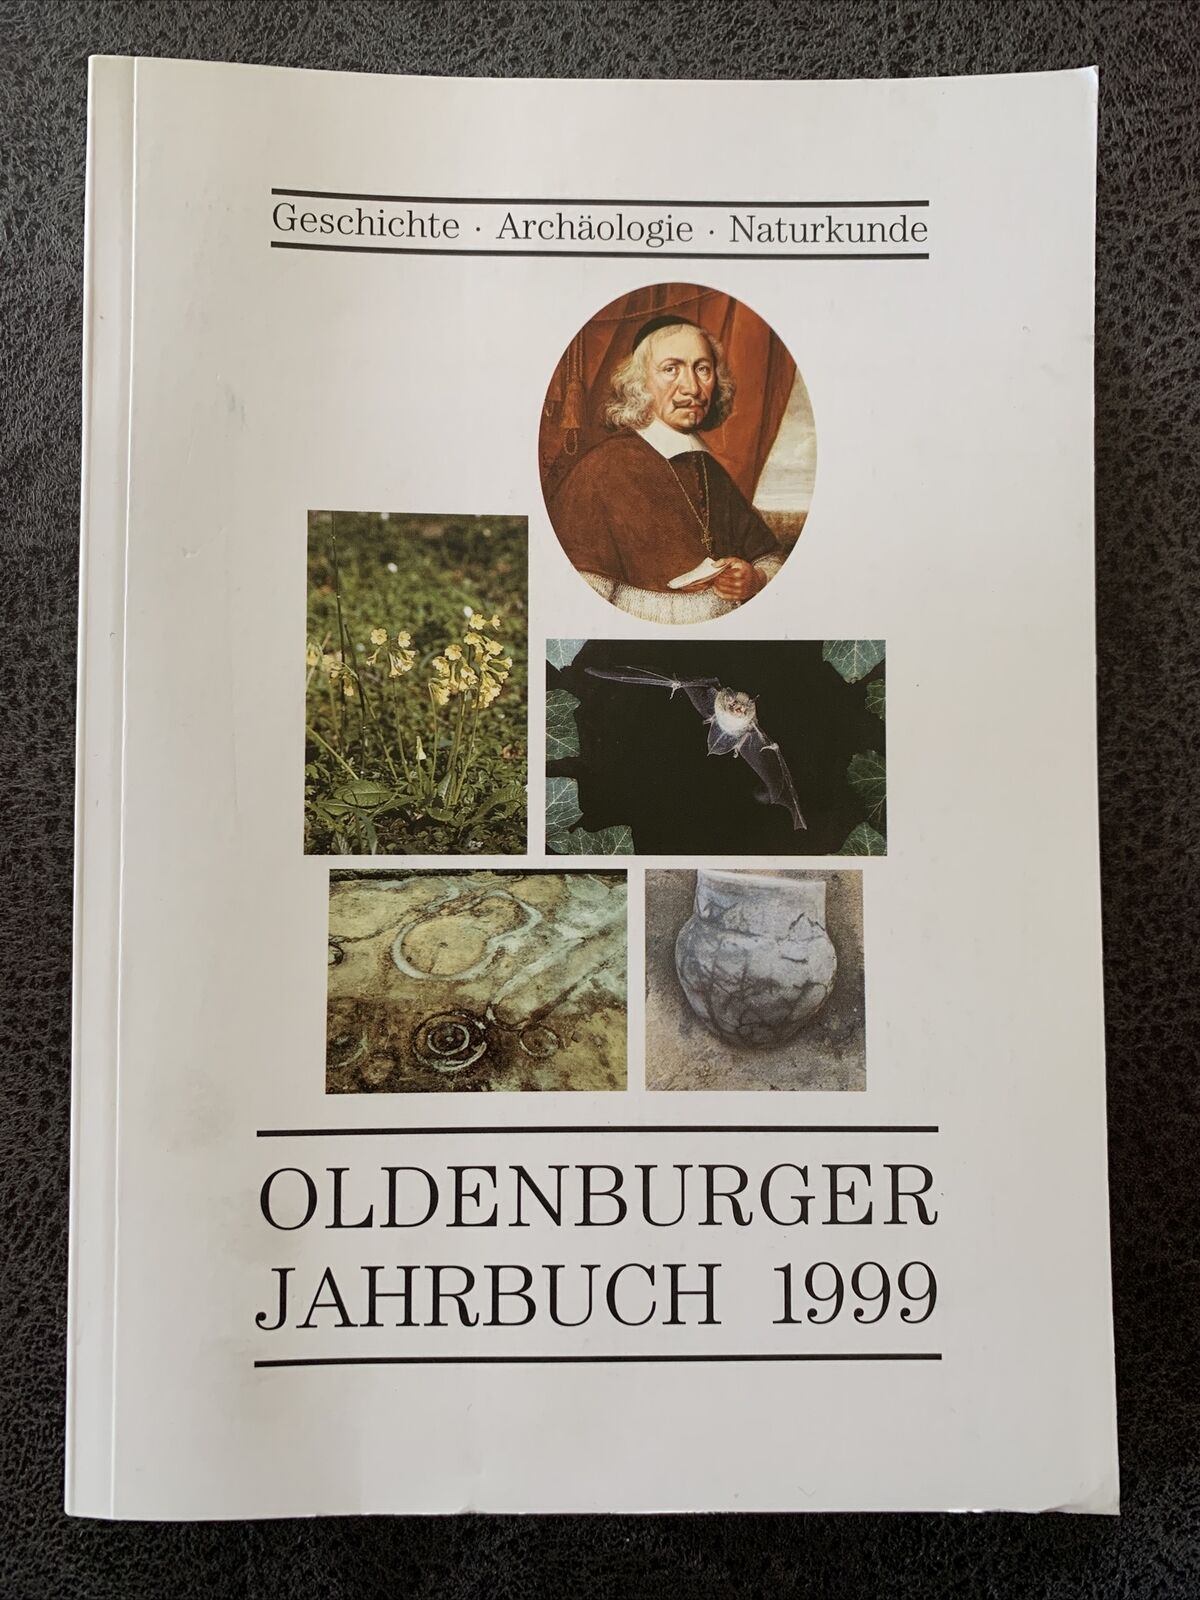 Oldenburger Jahrbuch 1999, Geschichte - Archäologie - Naturkunde Band 99 - Unbekannt